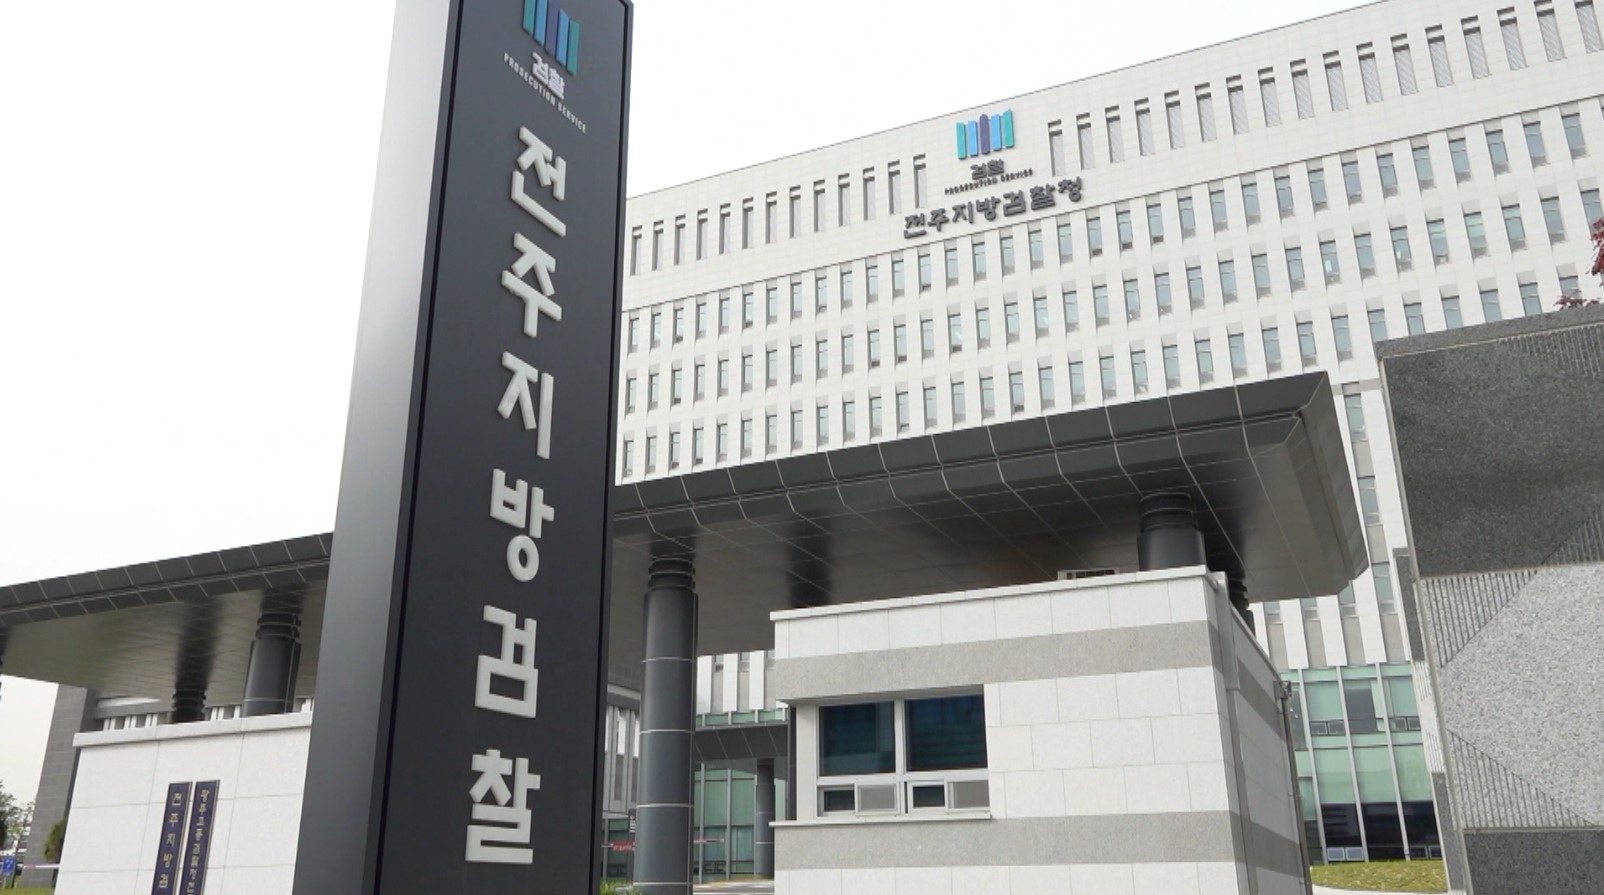 '태양광 공사비 부풀려 부당 대출'..업자 등 15명 기소